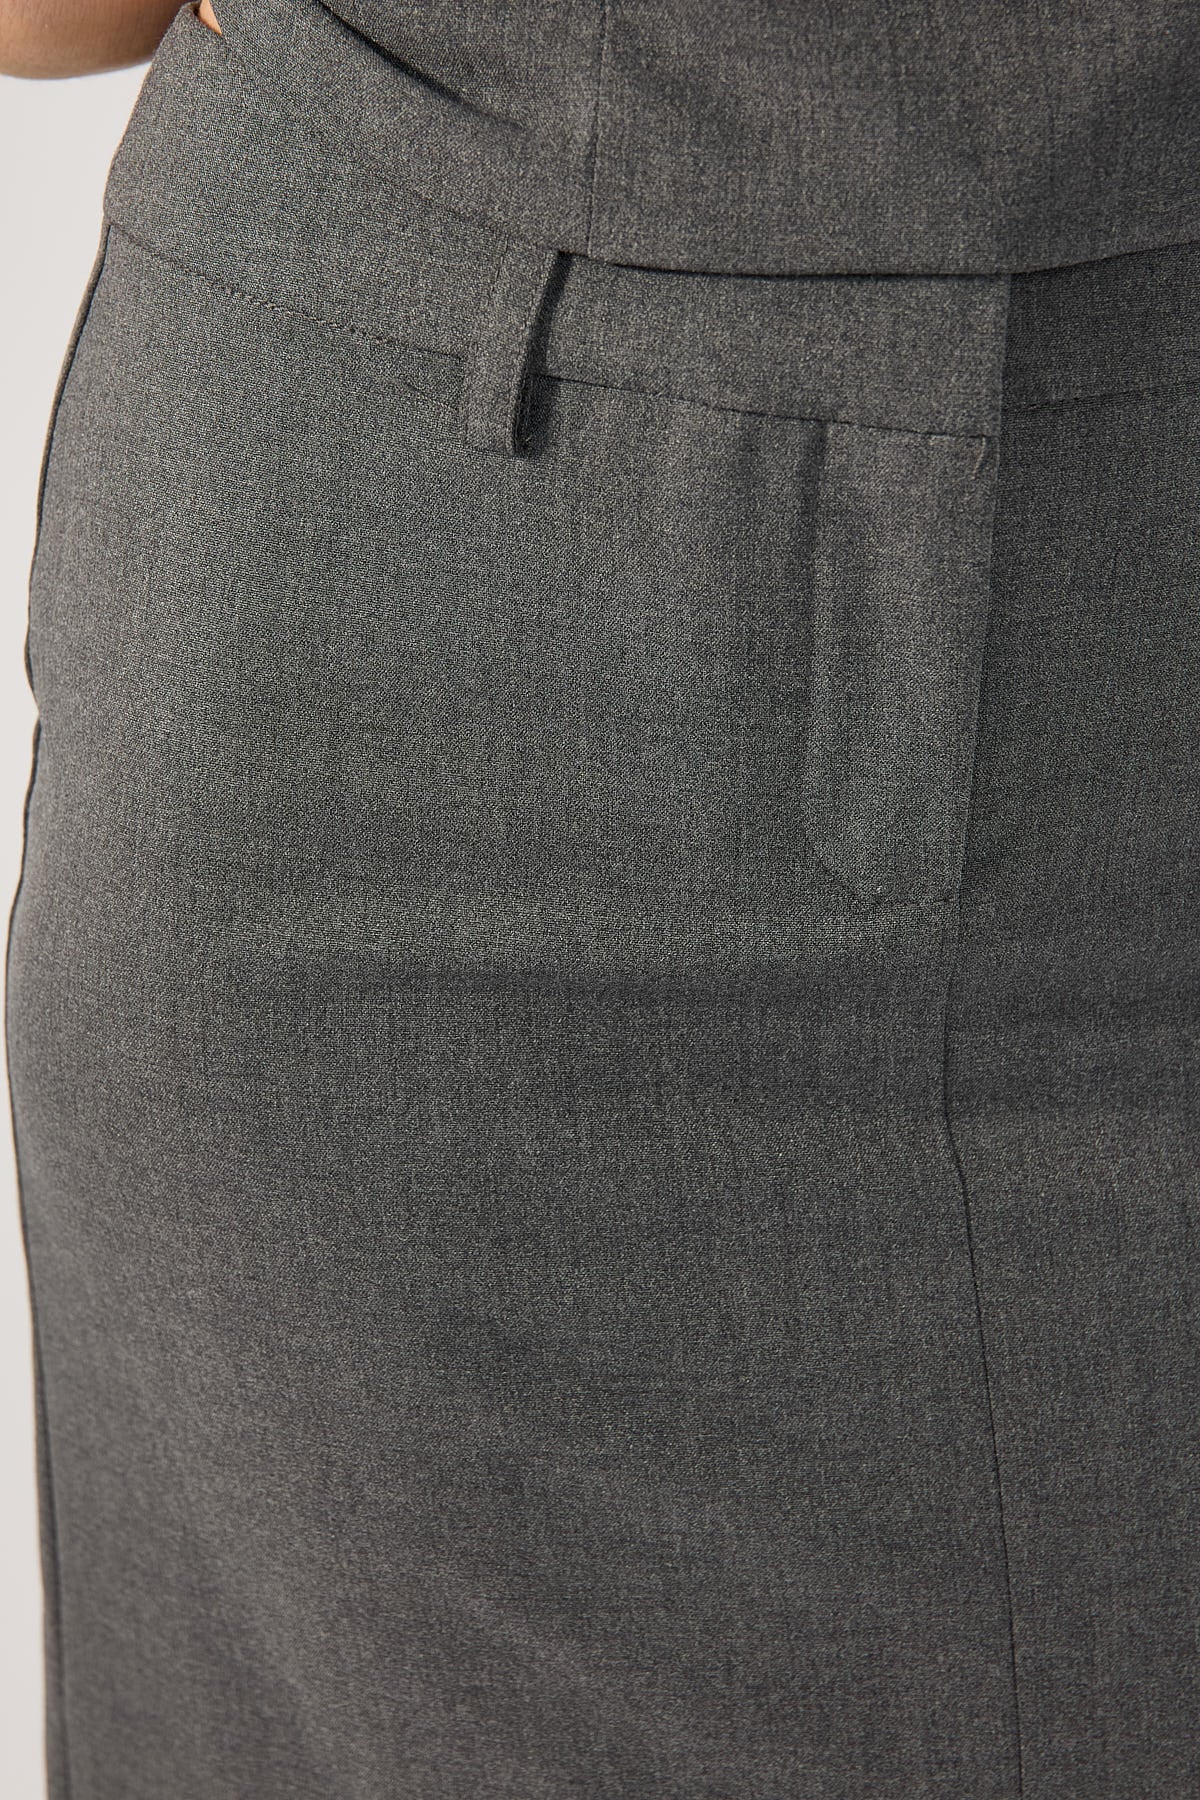 Perfect Stranger Winona Tailored Midi Skirt Grey